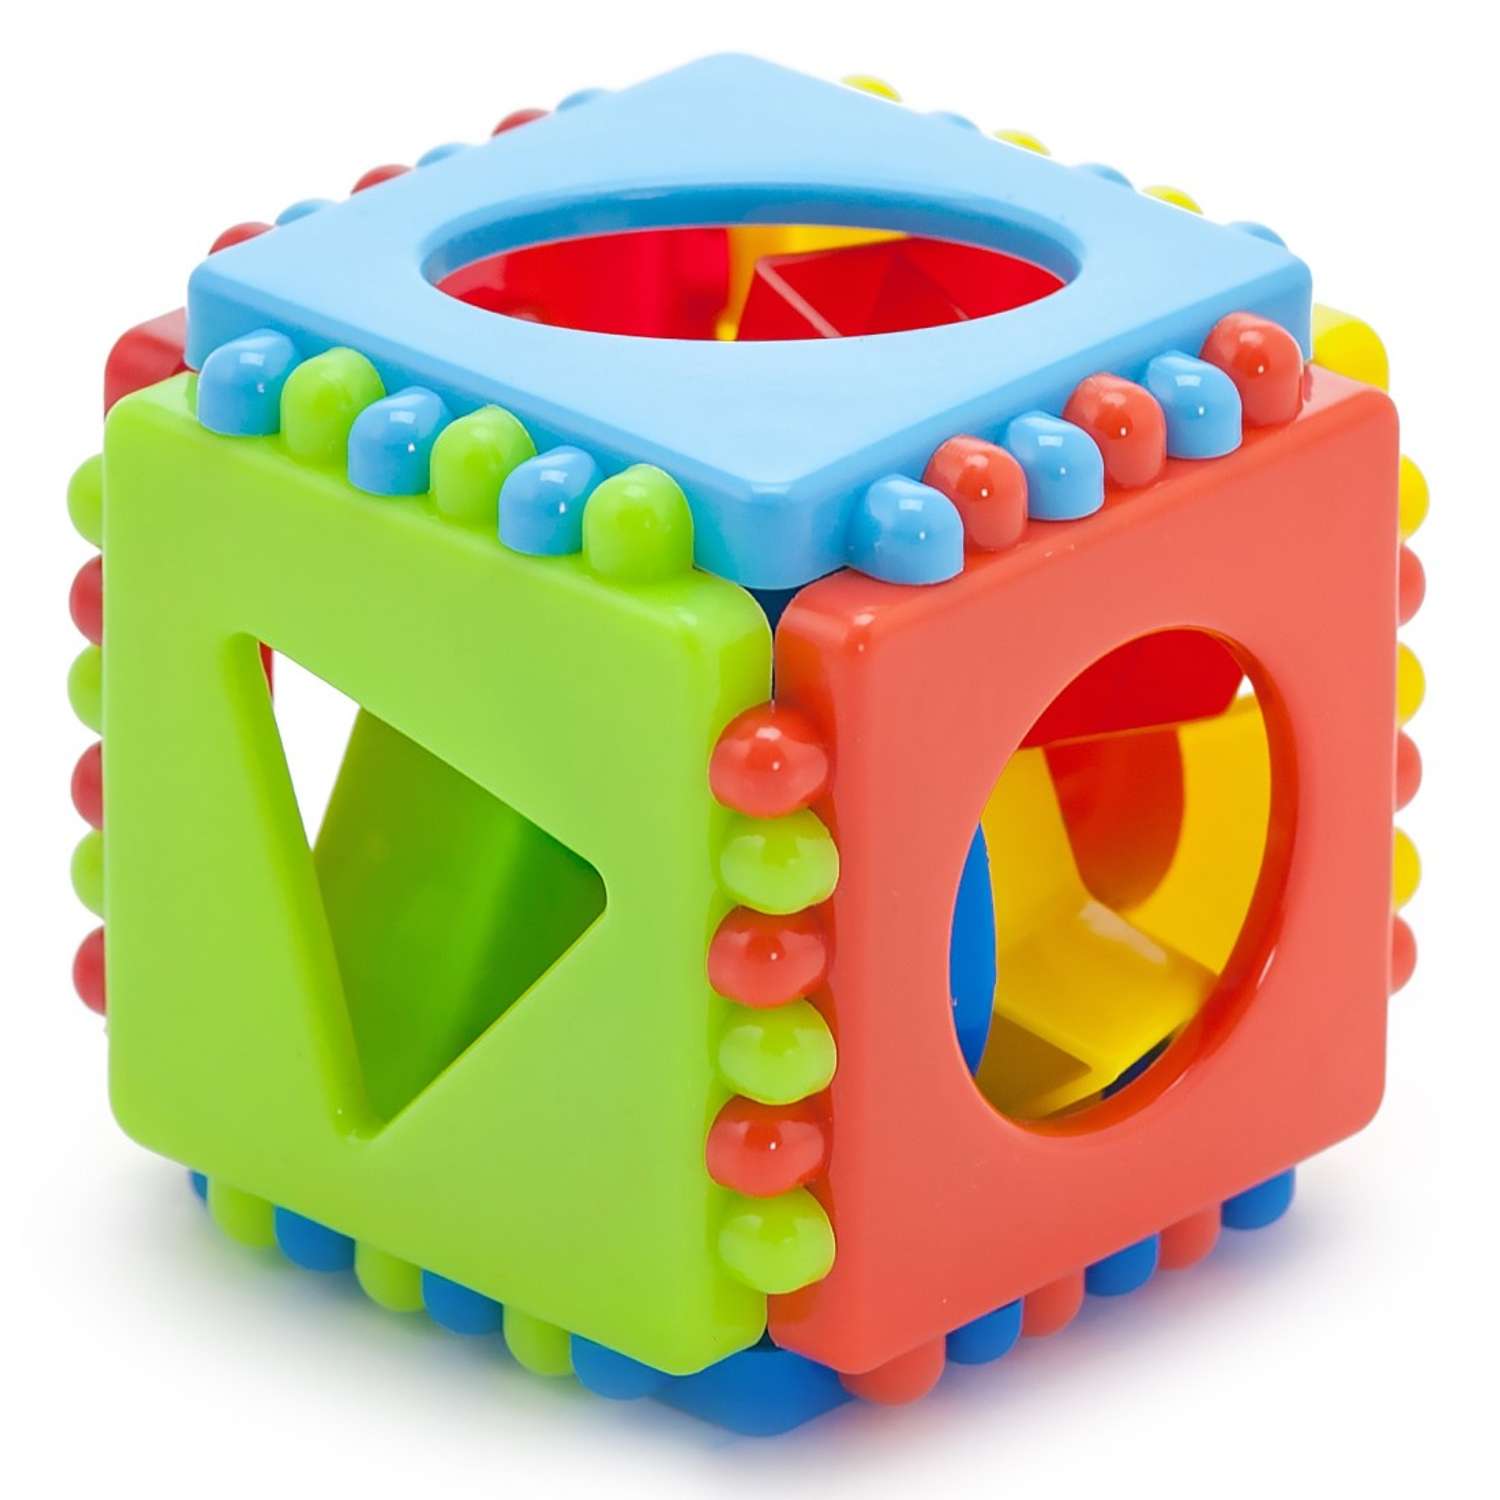 Развивающие игрушки БИПЛАНТ конструктор для малышей Кноп-Кнопыч 114 деталей + Сортер кубик малый + Команда КВА - фото 9